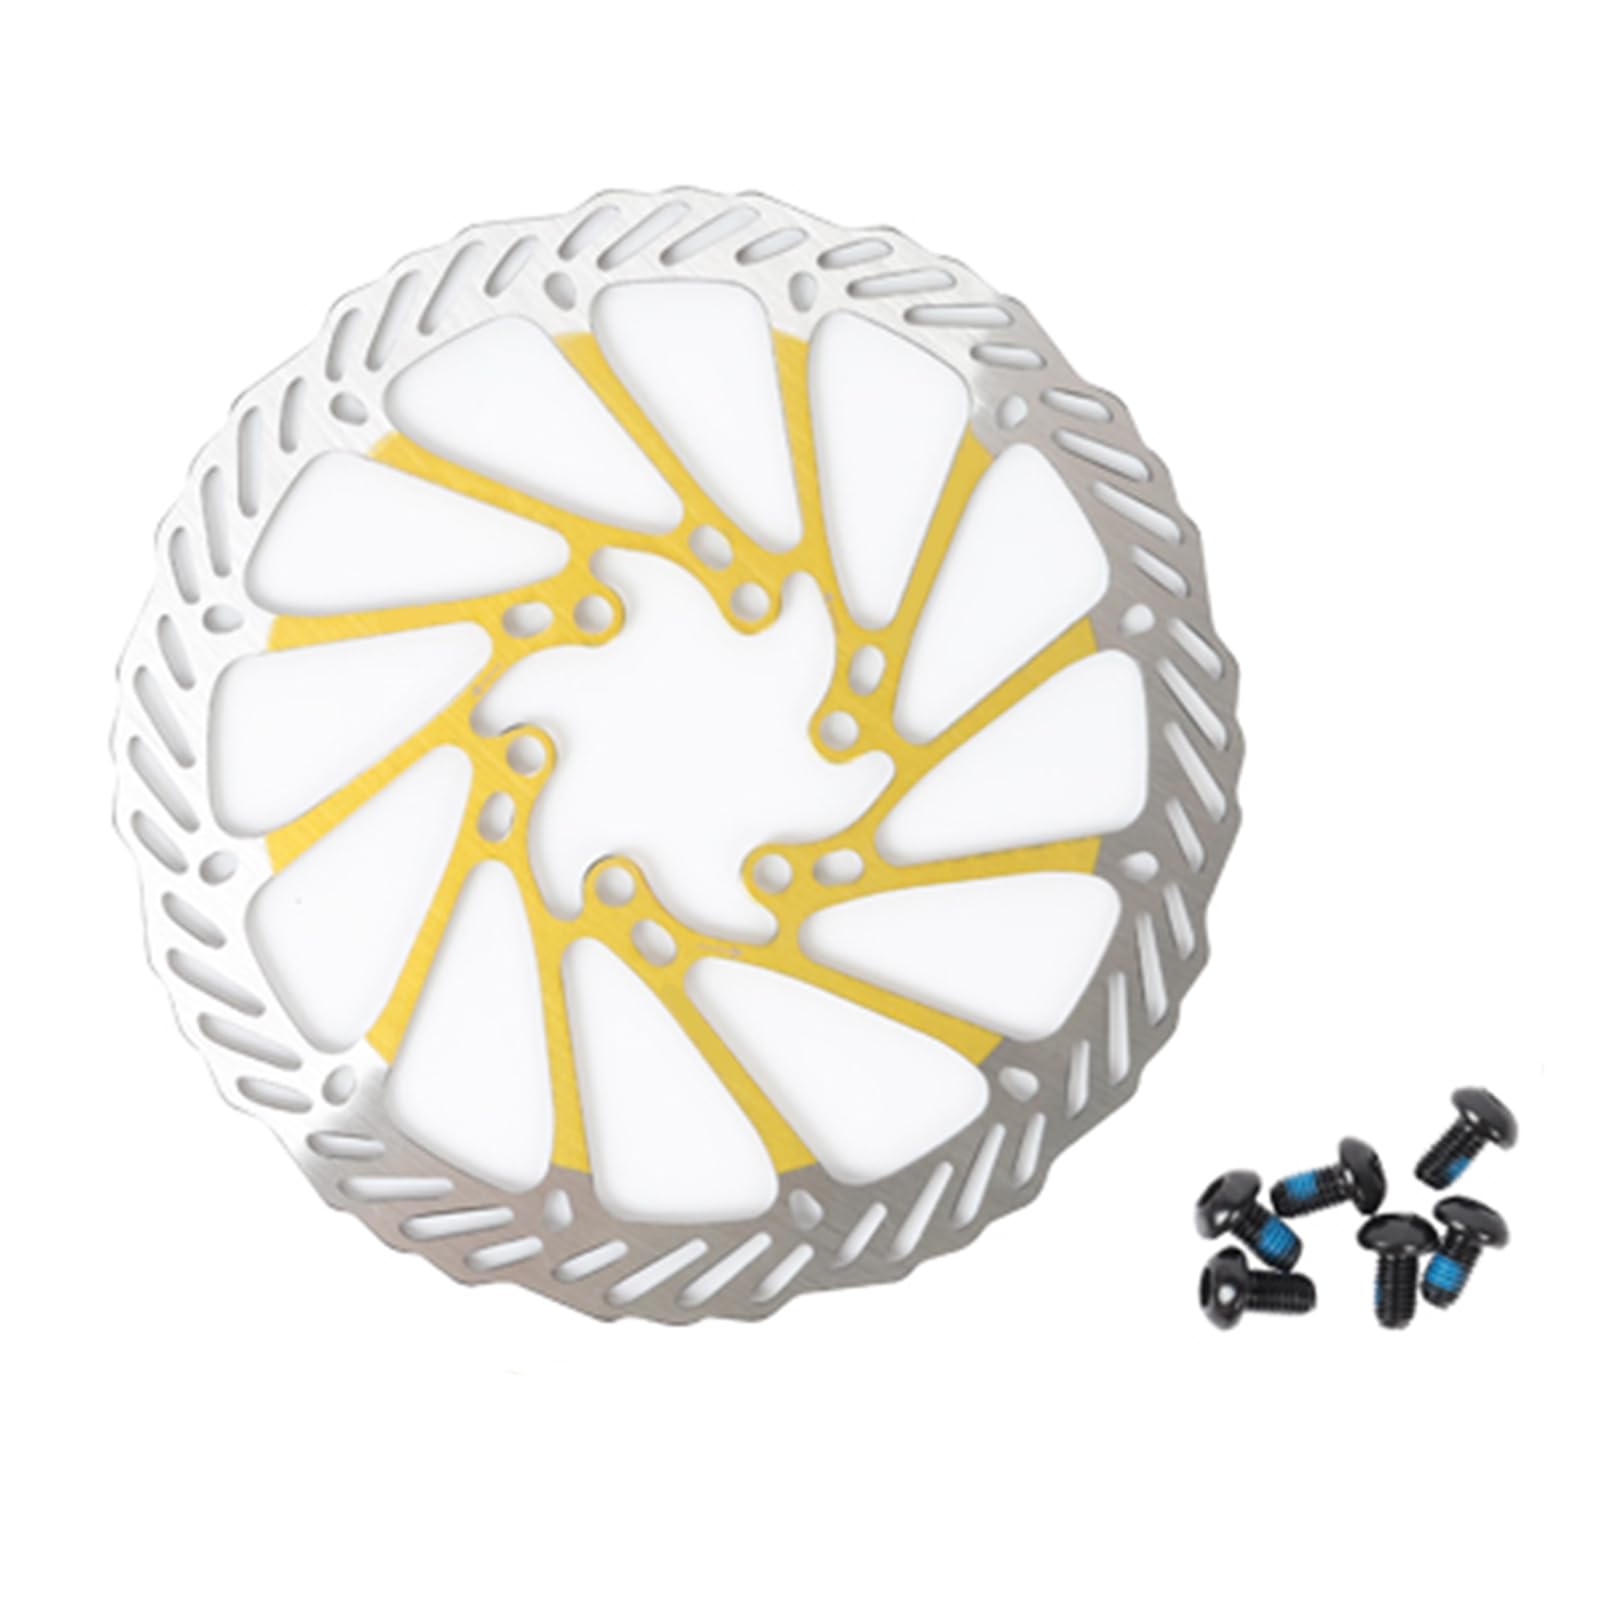 RINGGLO Fahrrad-Scheibenbremsrotor, 180 mm, Edelstahl-Fahrradrotoren mit 6 Schrauben, passend für Mountainbikes, Rennräder und die meisten Fahrräder,180mm gold von RINGGLO